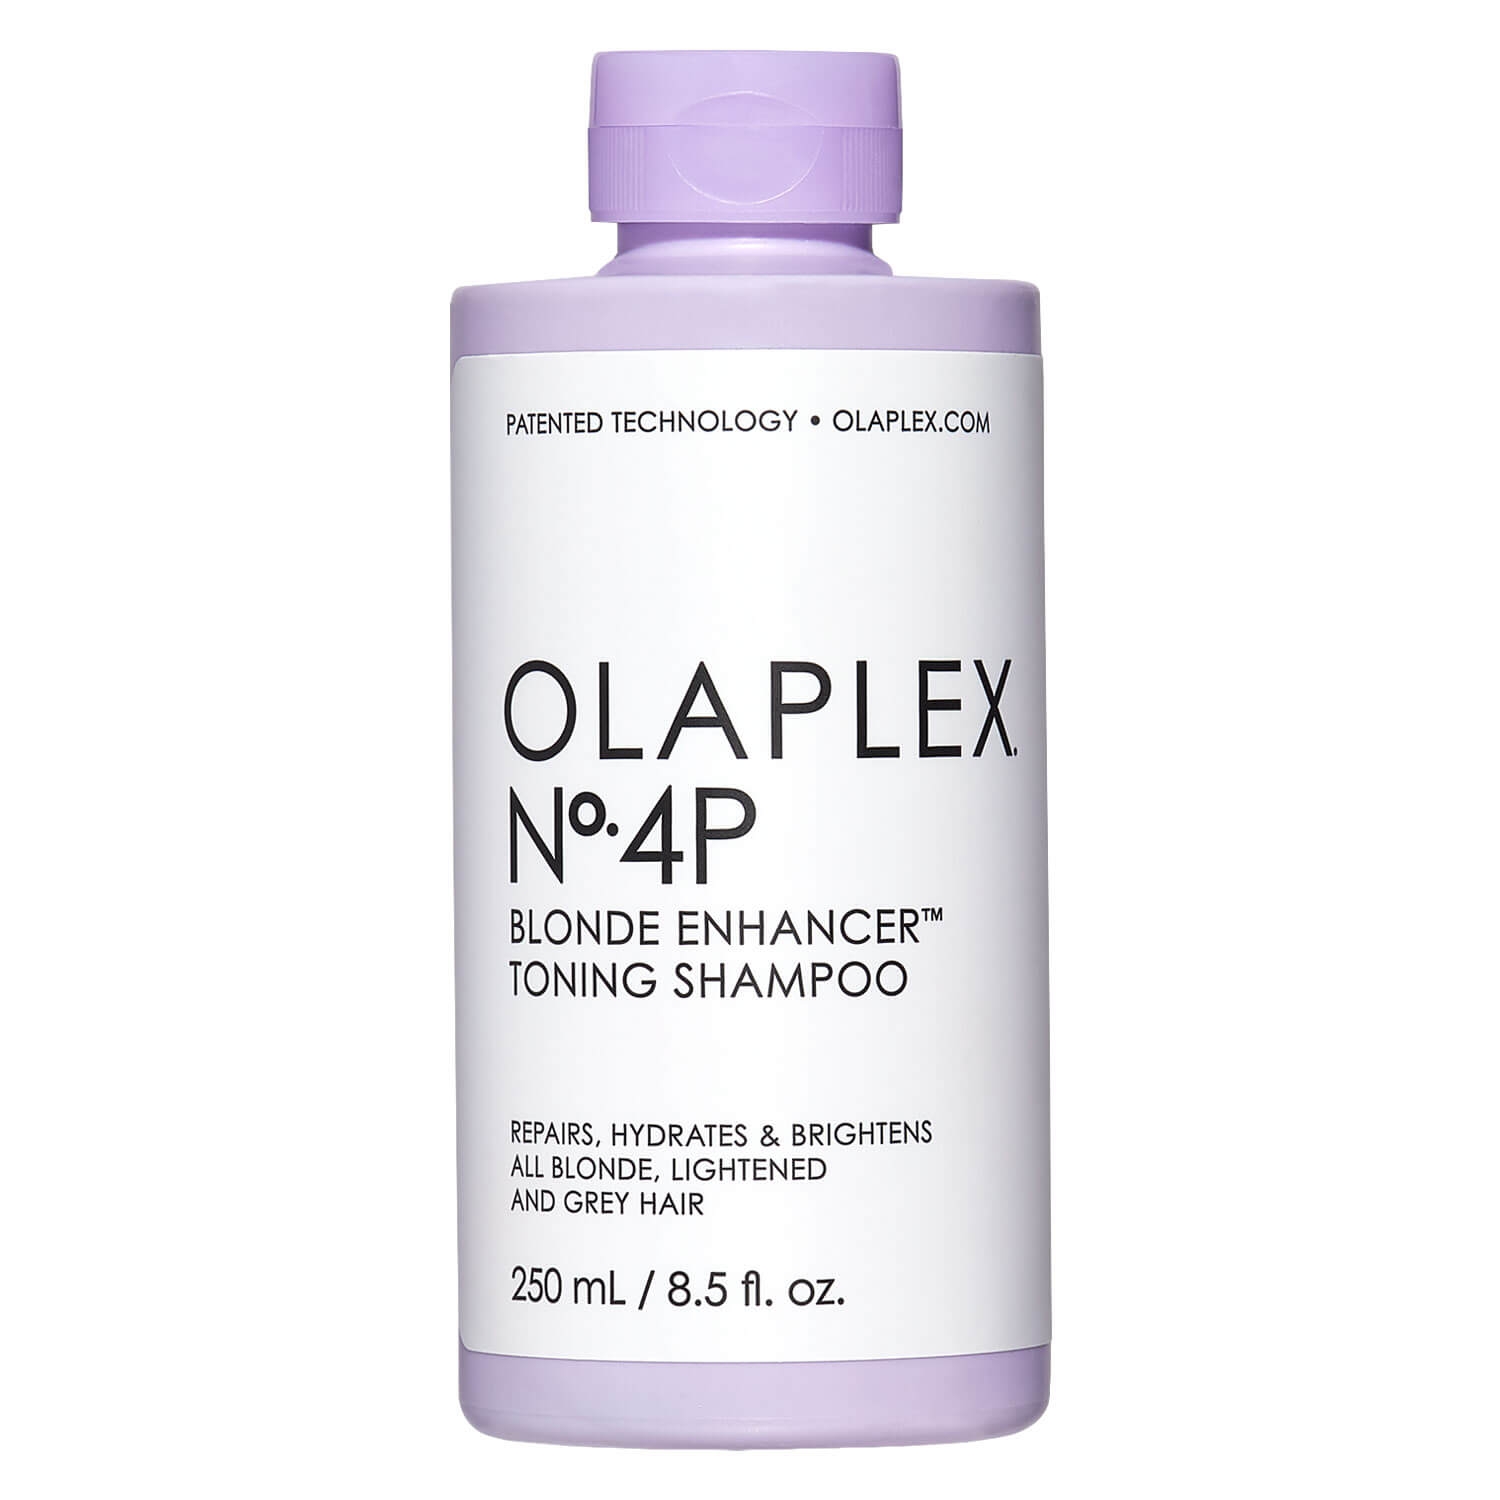 Produktbild von Olaplex - Blonde Enhancer Toning Shampoo No. 4P